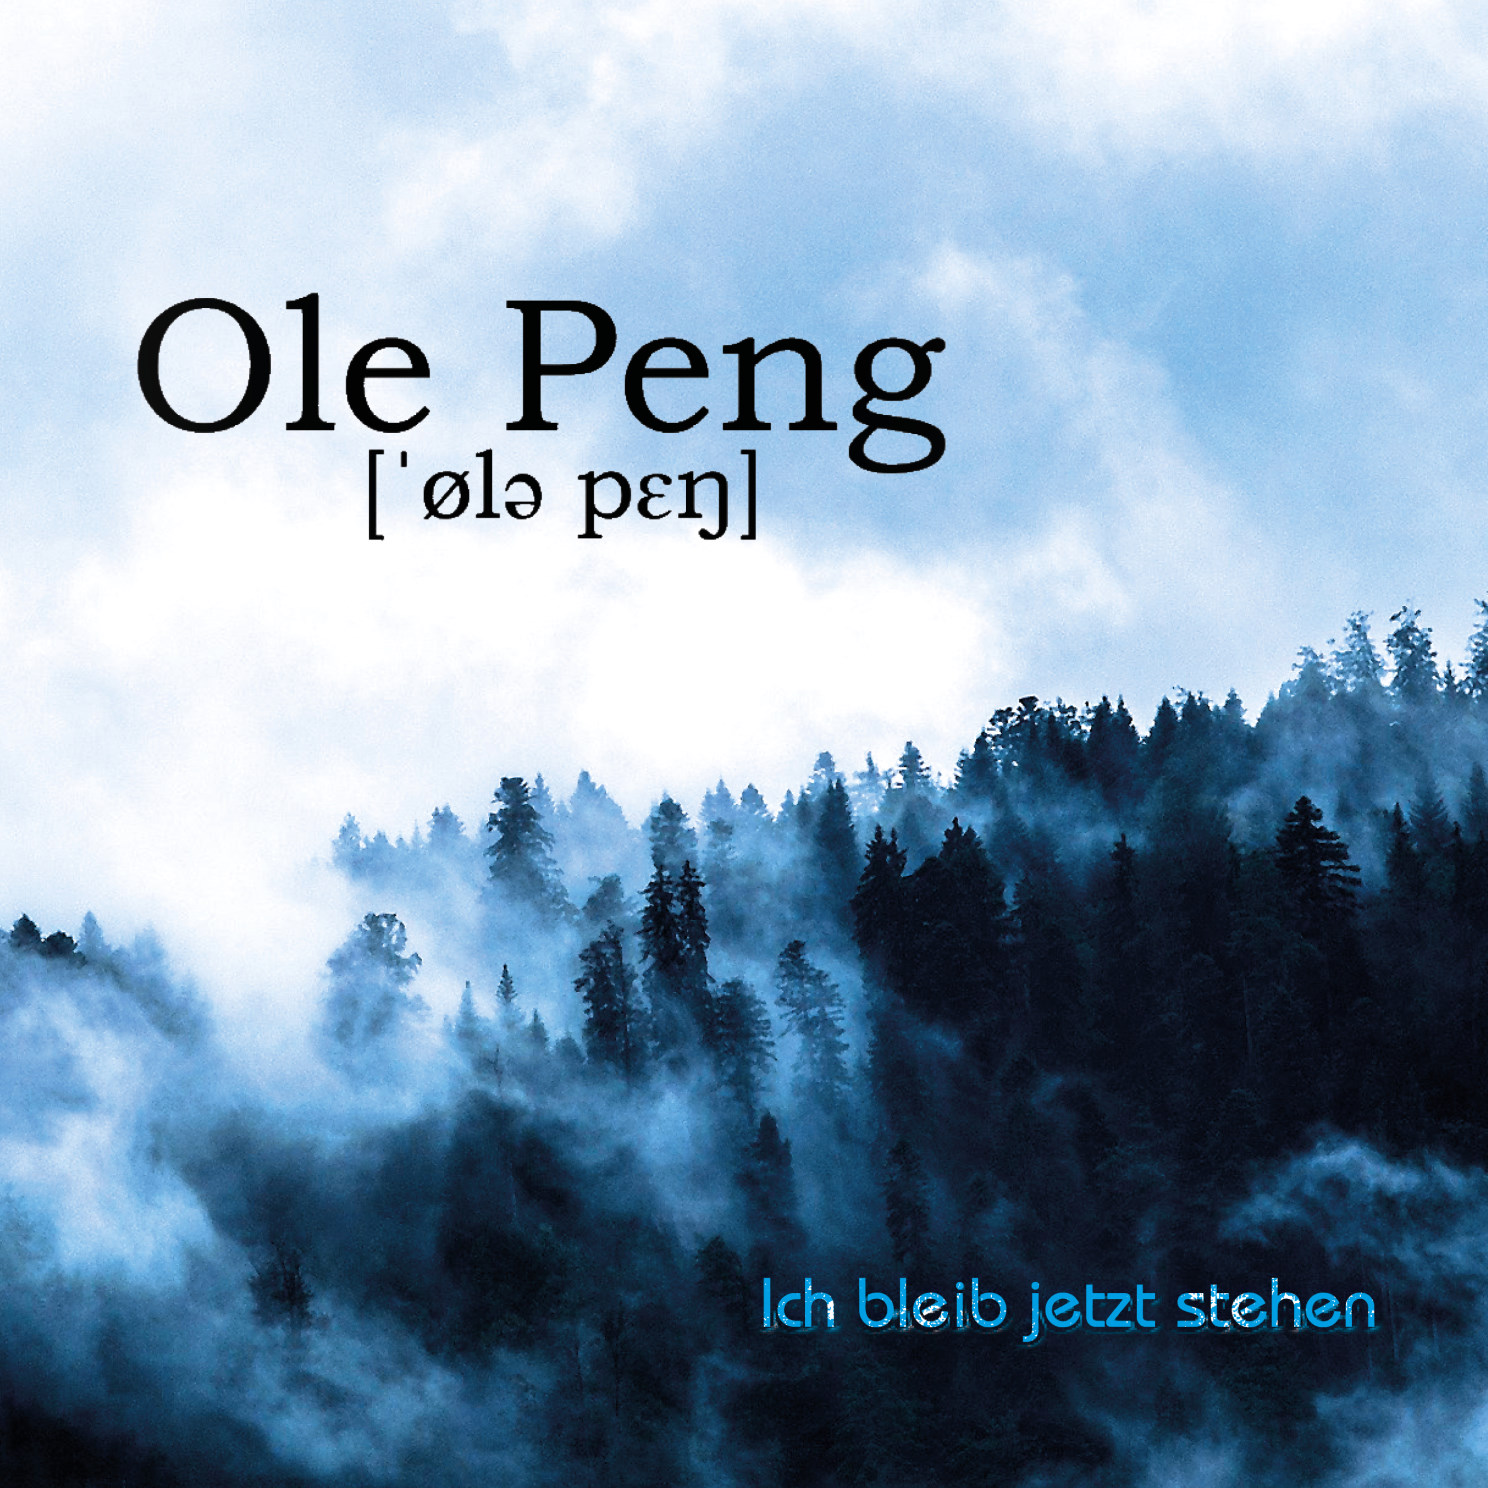 Ole Peng